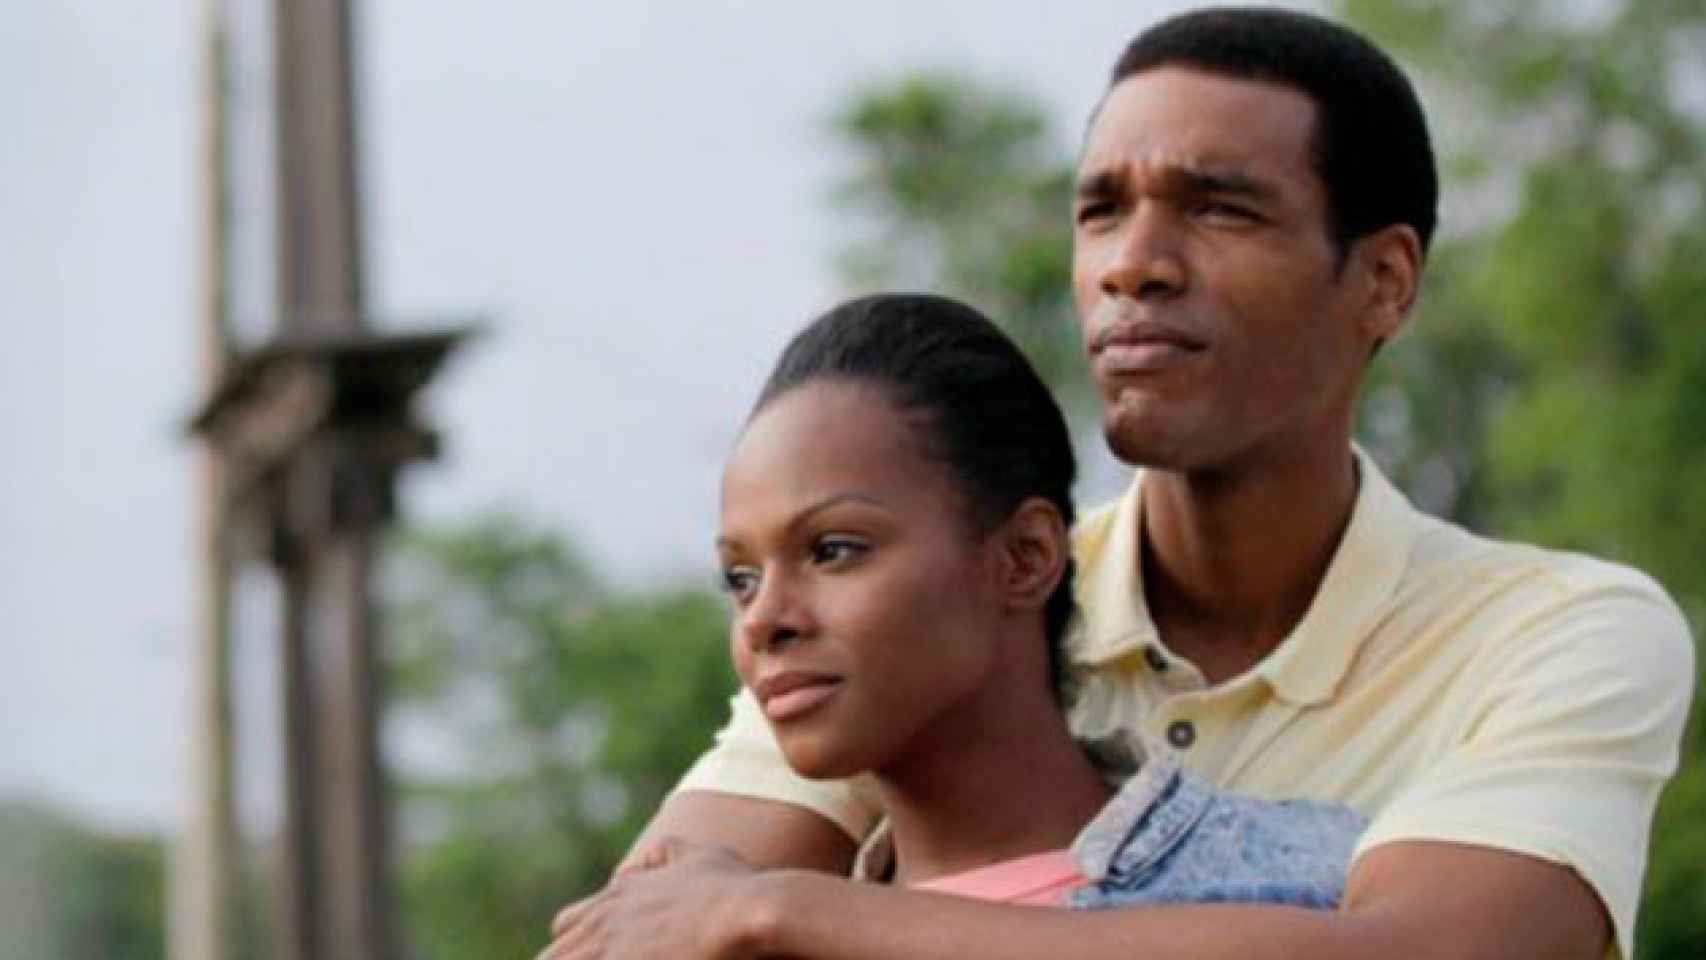 Imagen de la película 'Southside with you', que recrea la primera cita de Barack y Michelle Obama. / CG